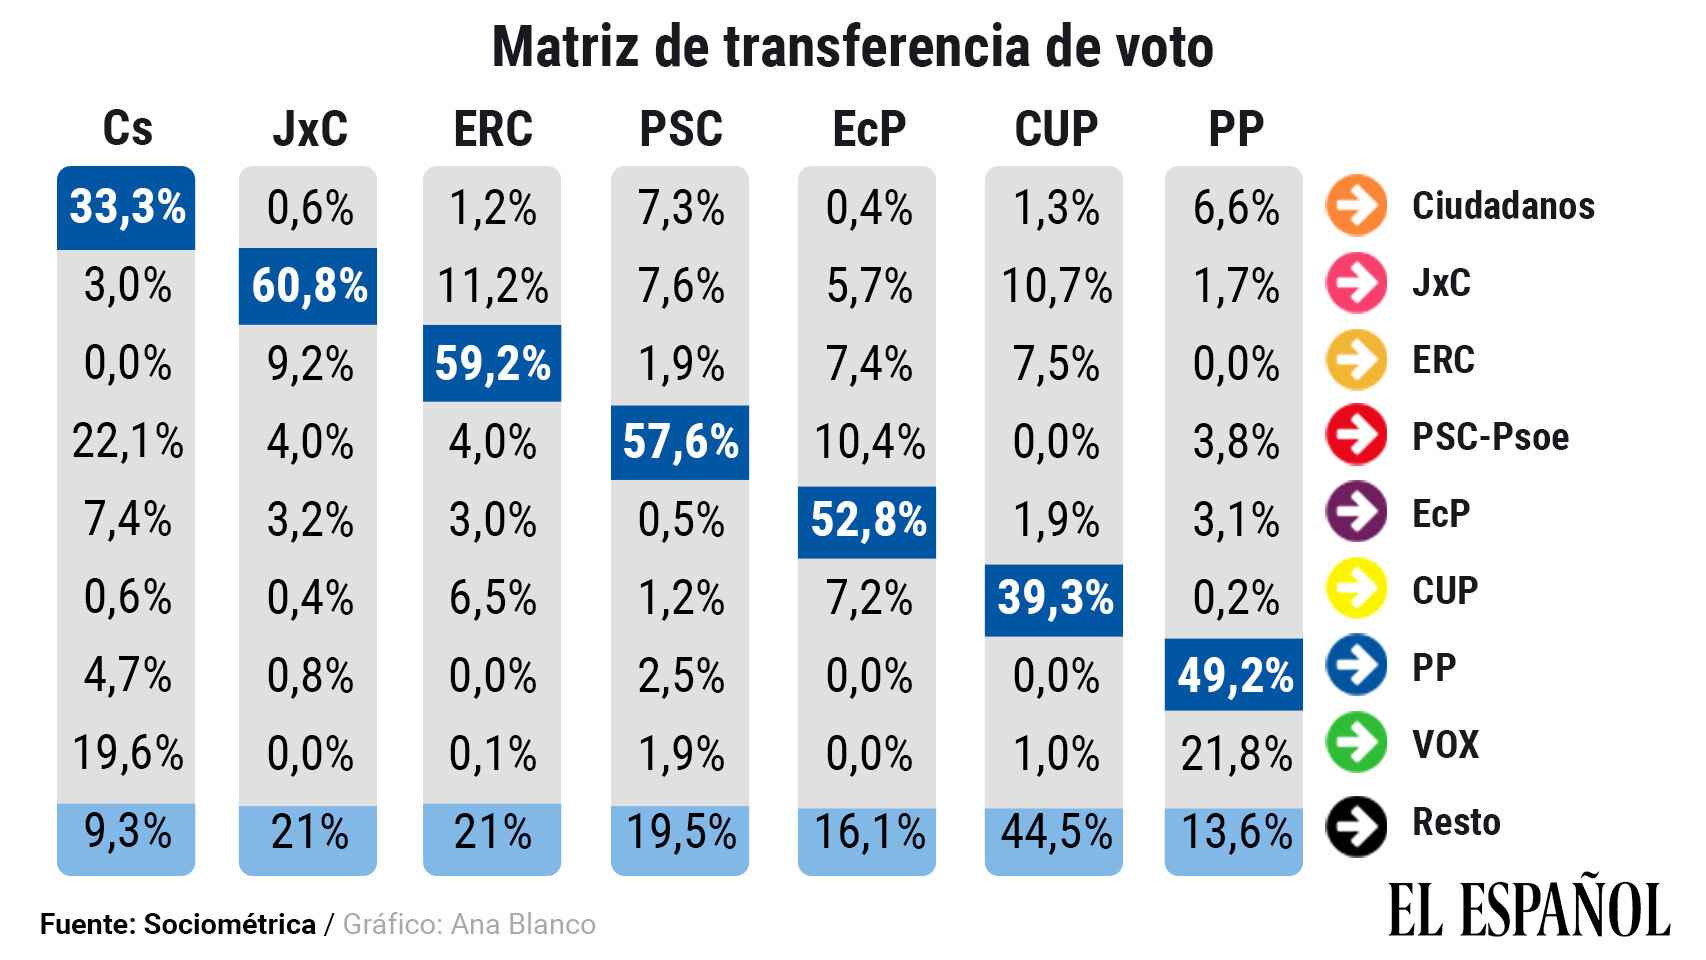 Matriz de transferencia de votos entre partidos.